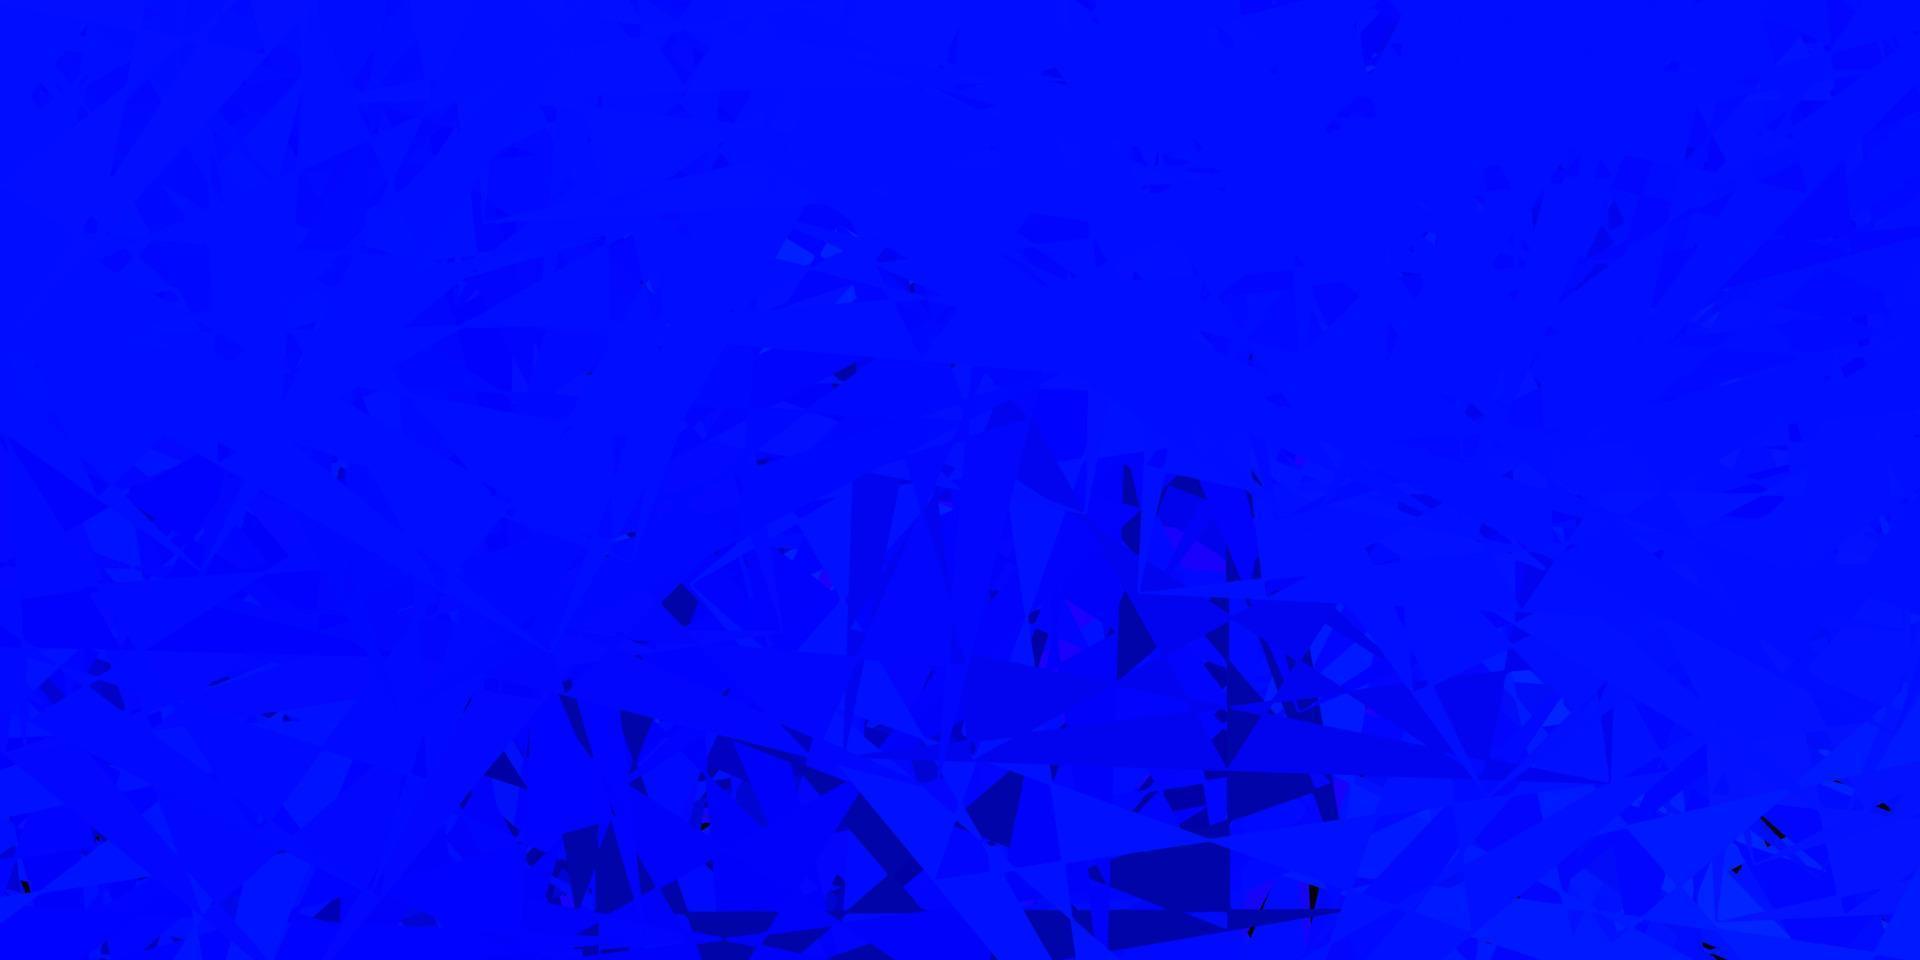 mörkblå vektorbakgrund med månghörniga former. vektor